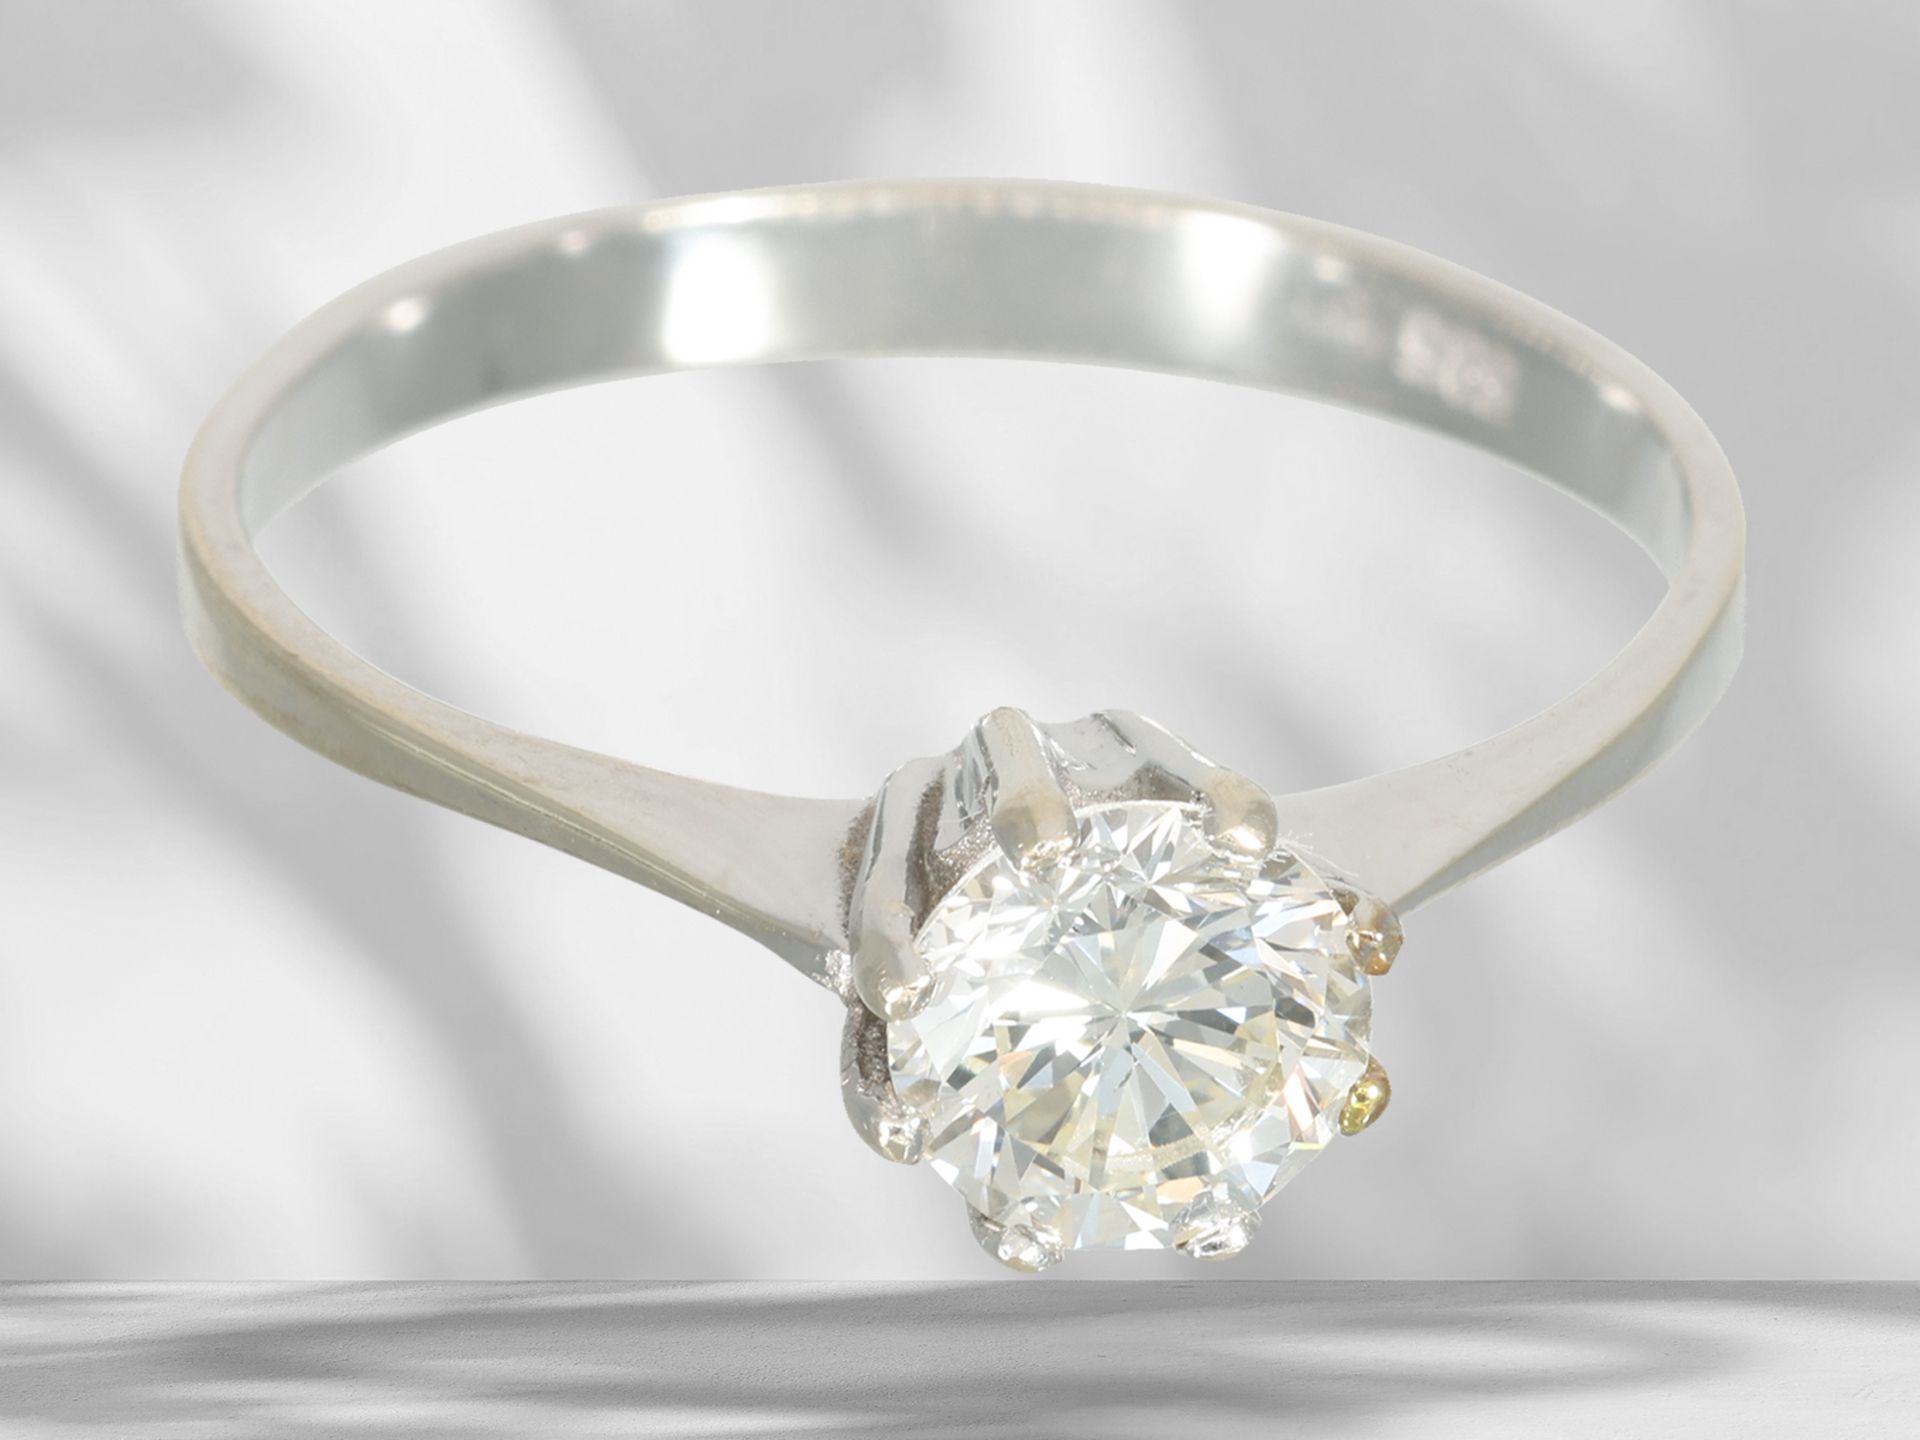 White gold solitaire/brilliant-cut diamond ring, beautiful brilliant-cut diamond of approx. 0.6ct - Image 3 of 4